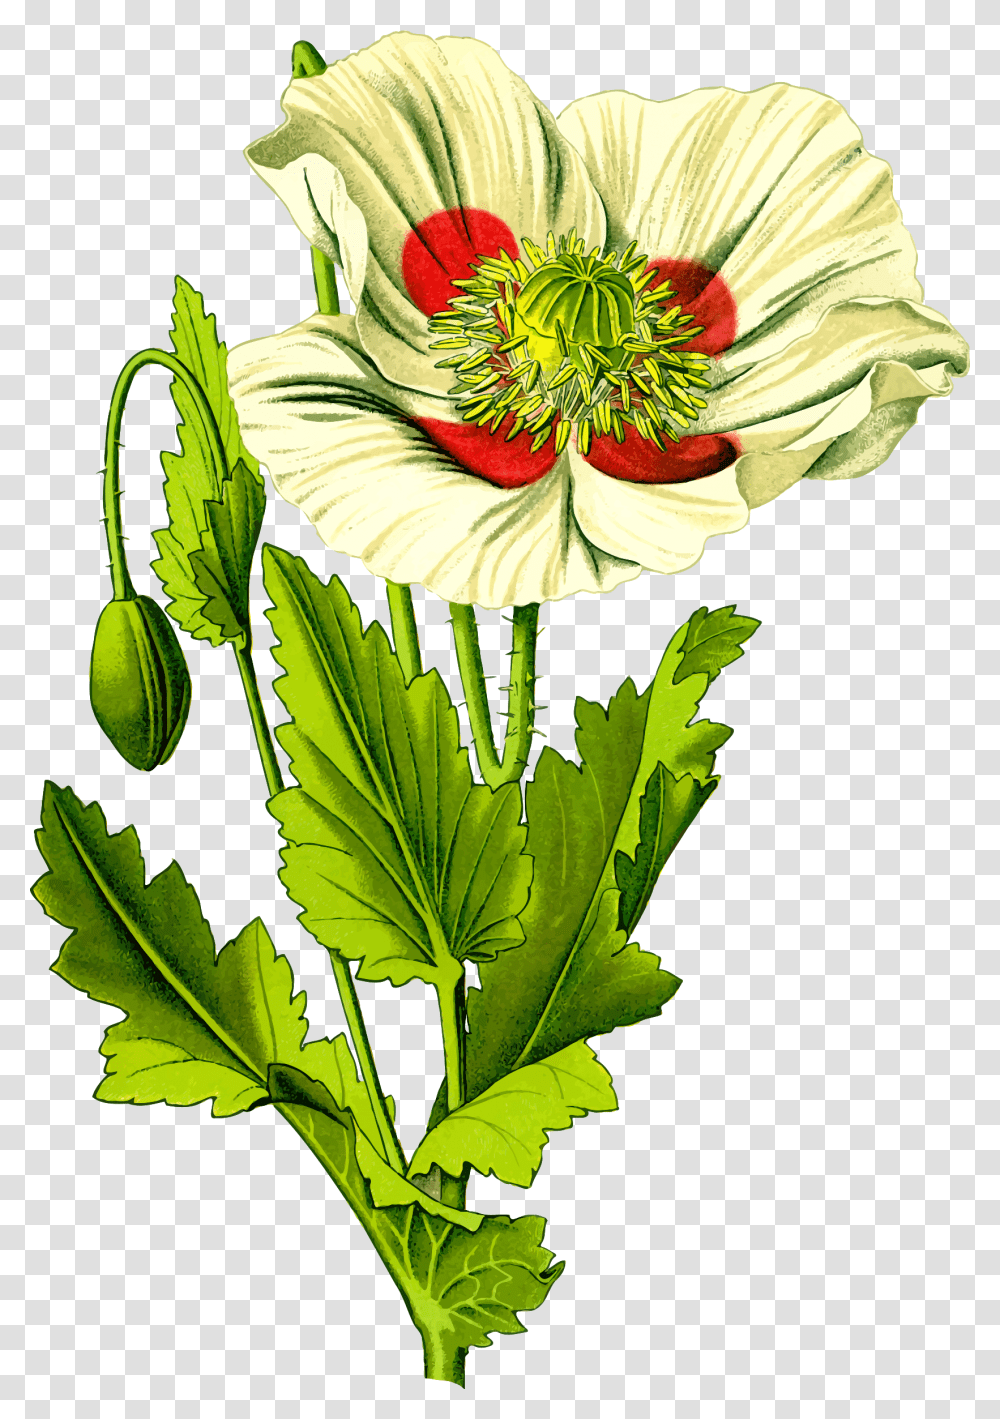 Opium Poppy 3 Clip Arts Opium Ancient Rome, Plant, Flower, Blossom, Pollen Transparent Png